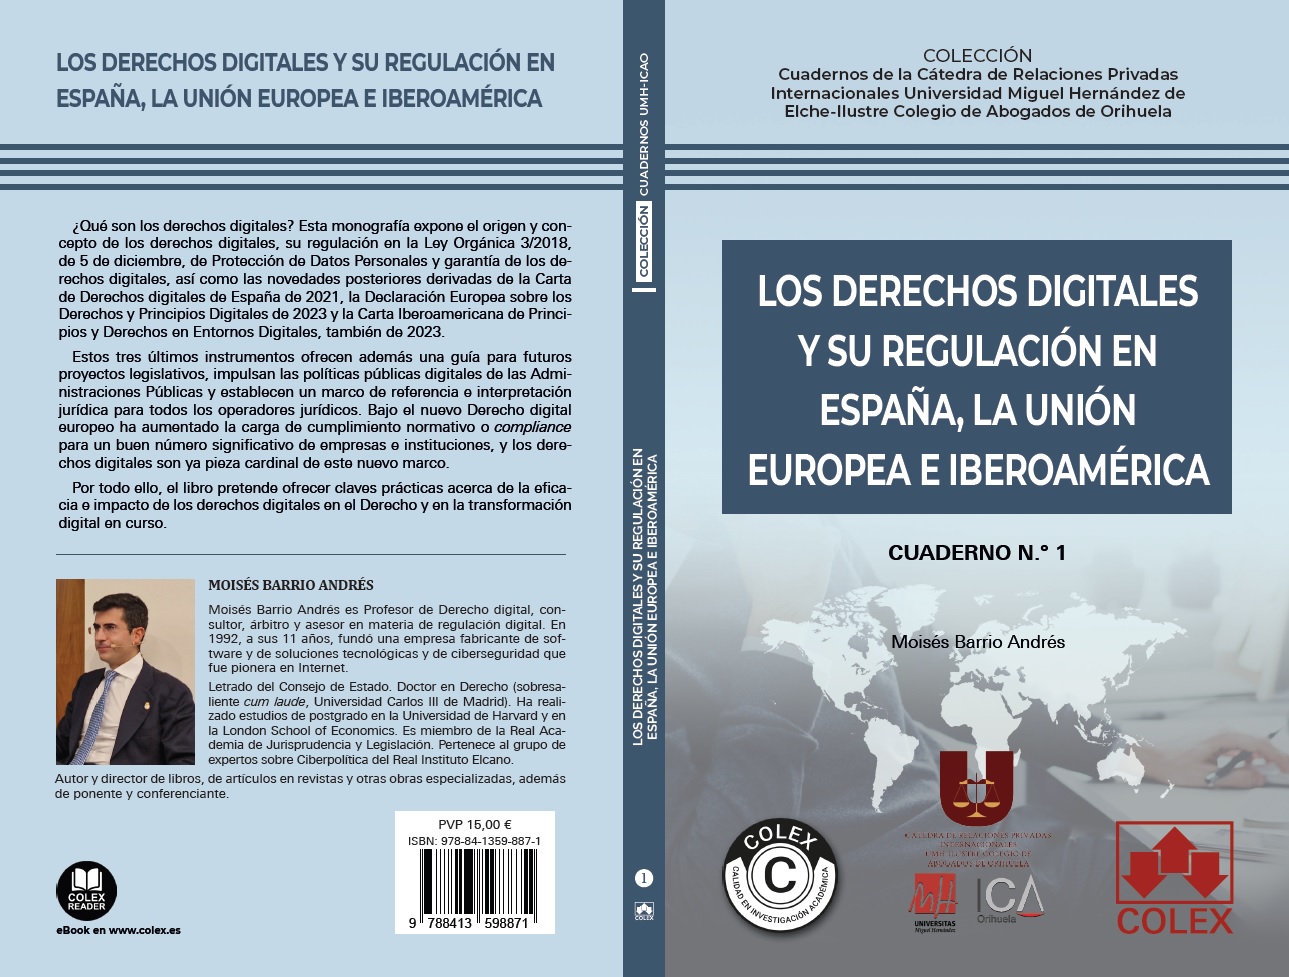 Nuevo libro sobre los derechos digitales ya disponible